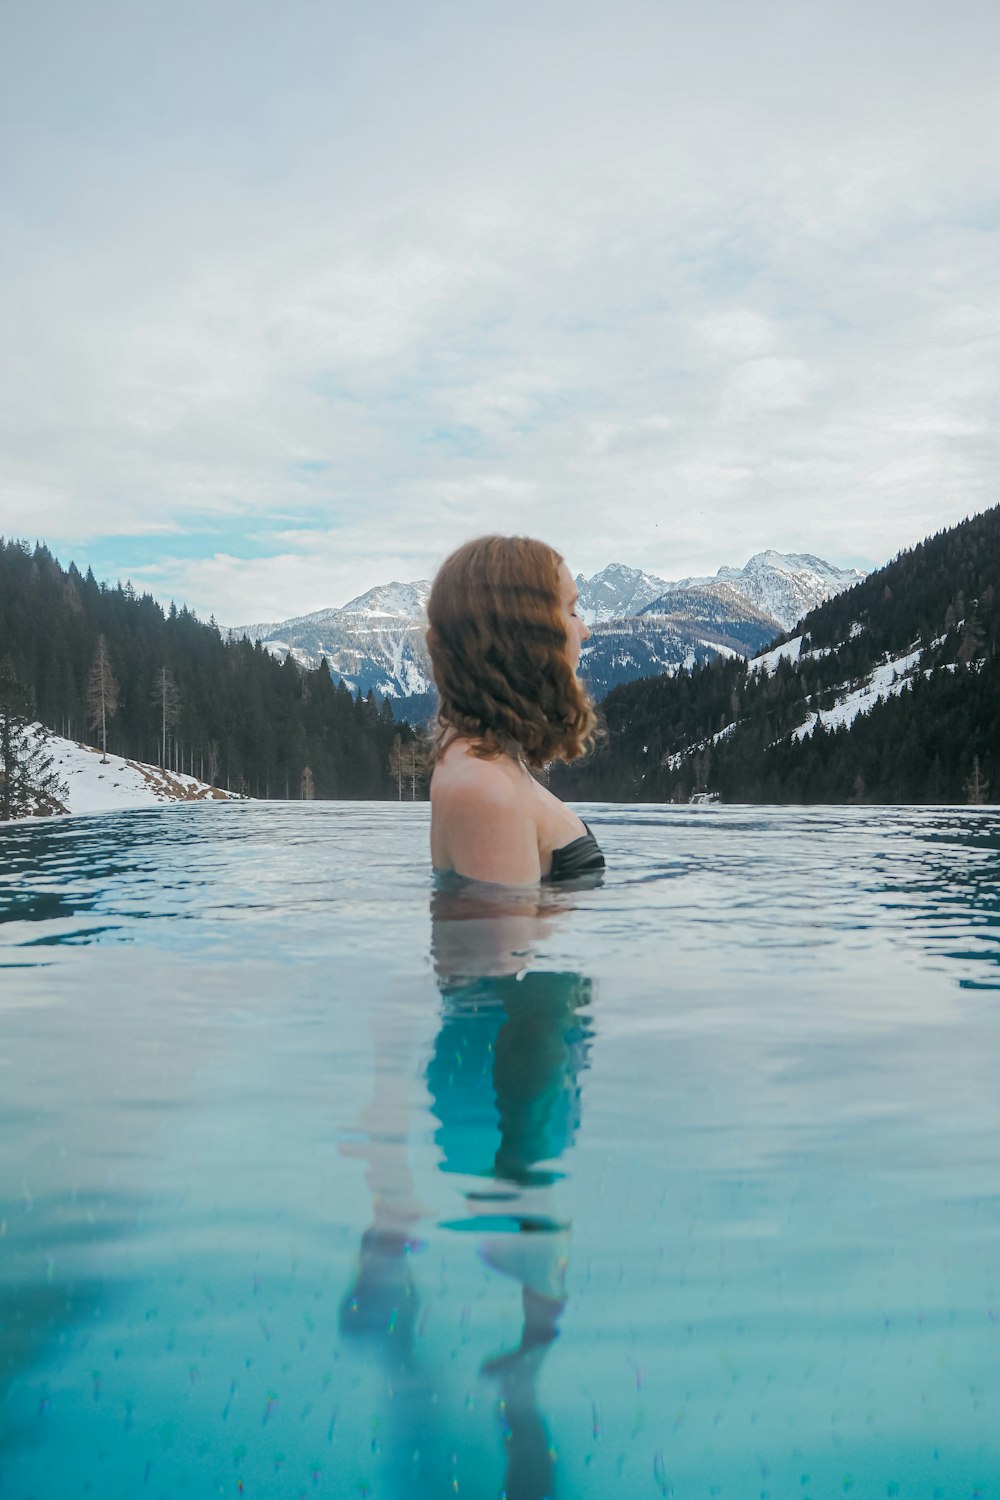 Une femme assise dans une piscine d’eau avec des montagnes en arrière-plan